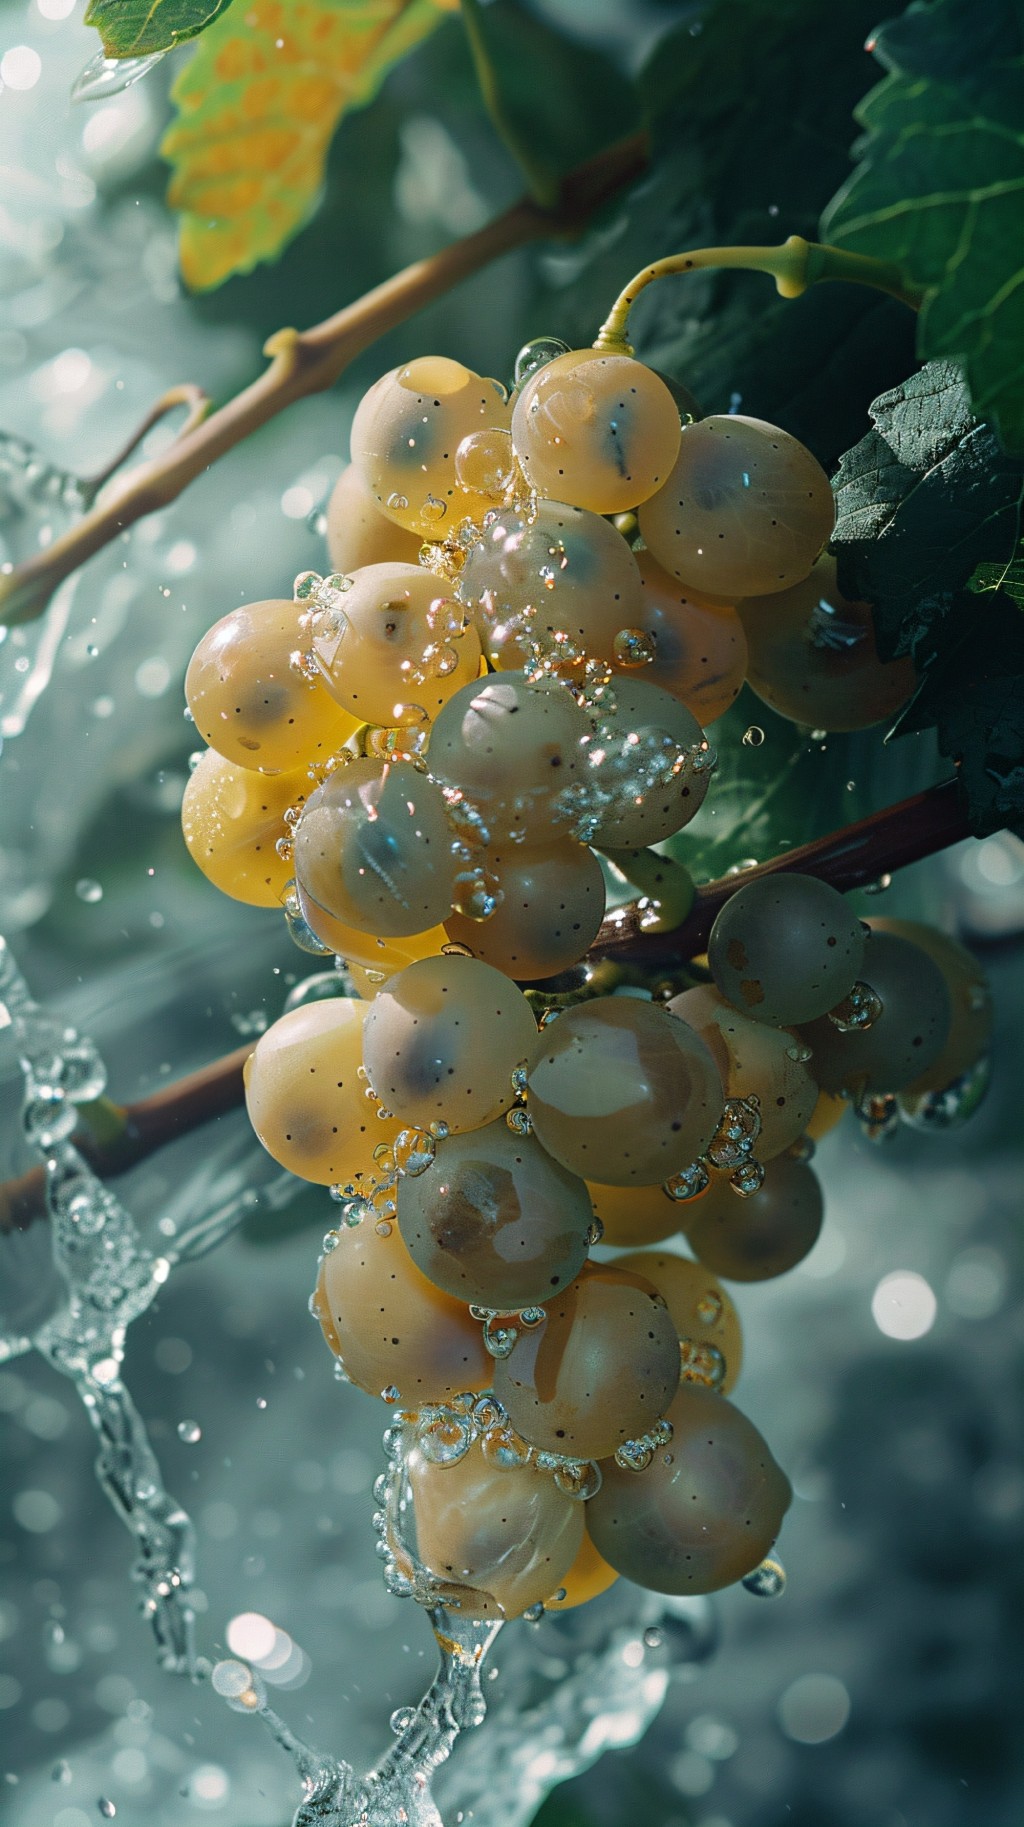 水果摄影大片系列——葡萄